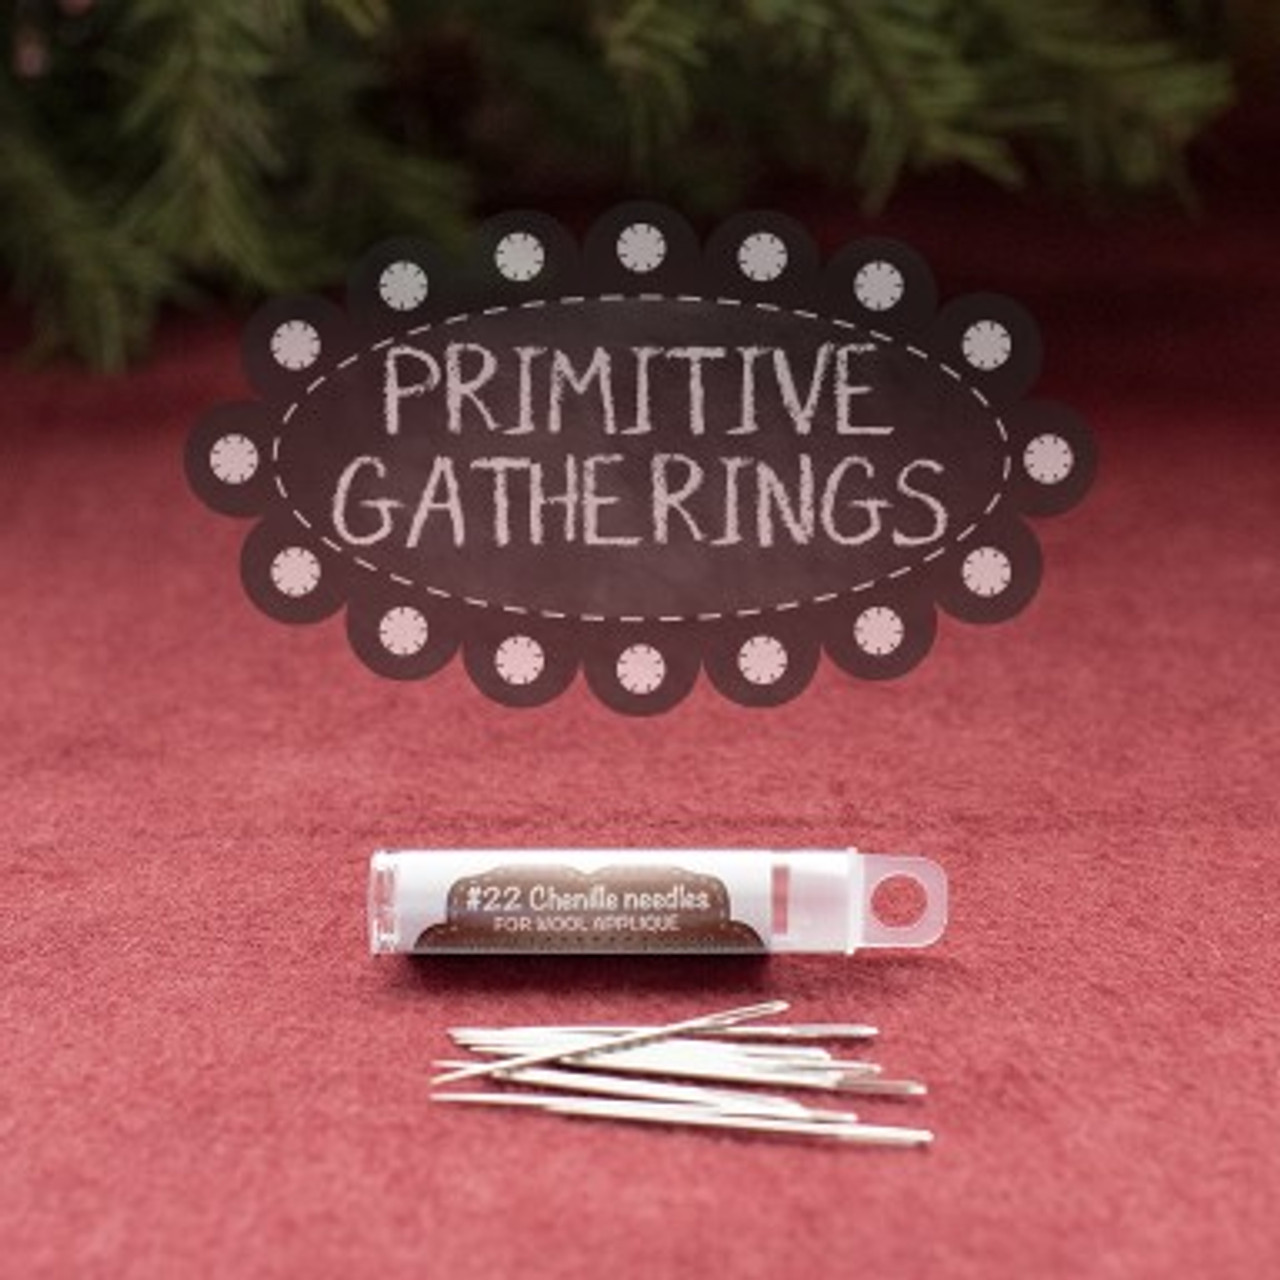 Primitive Gatherings Size 22 Chenille Needles - Primitive Gatherings Quilt  Shop